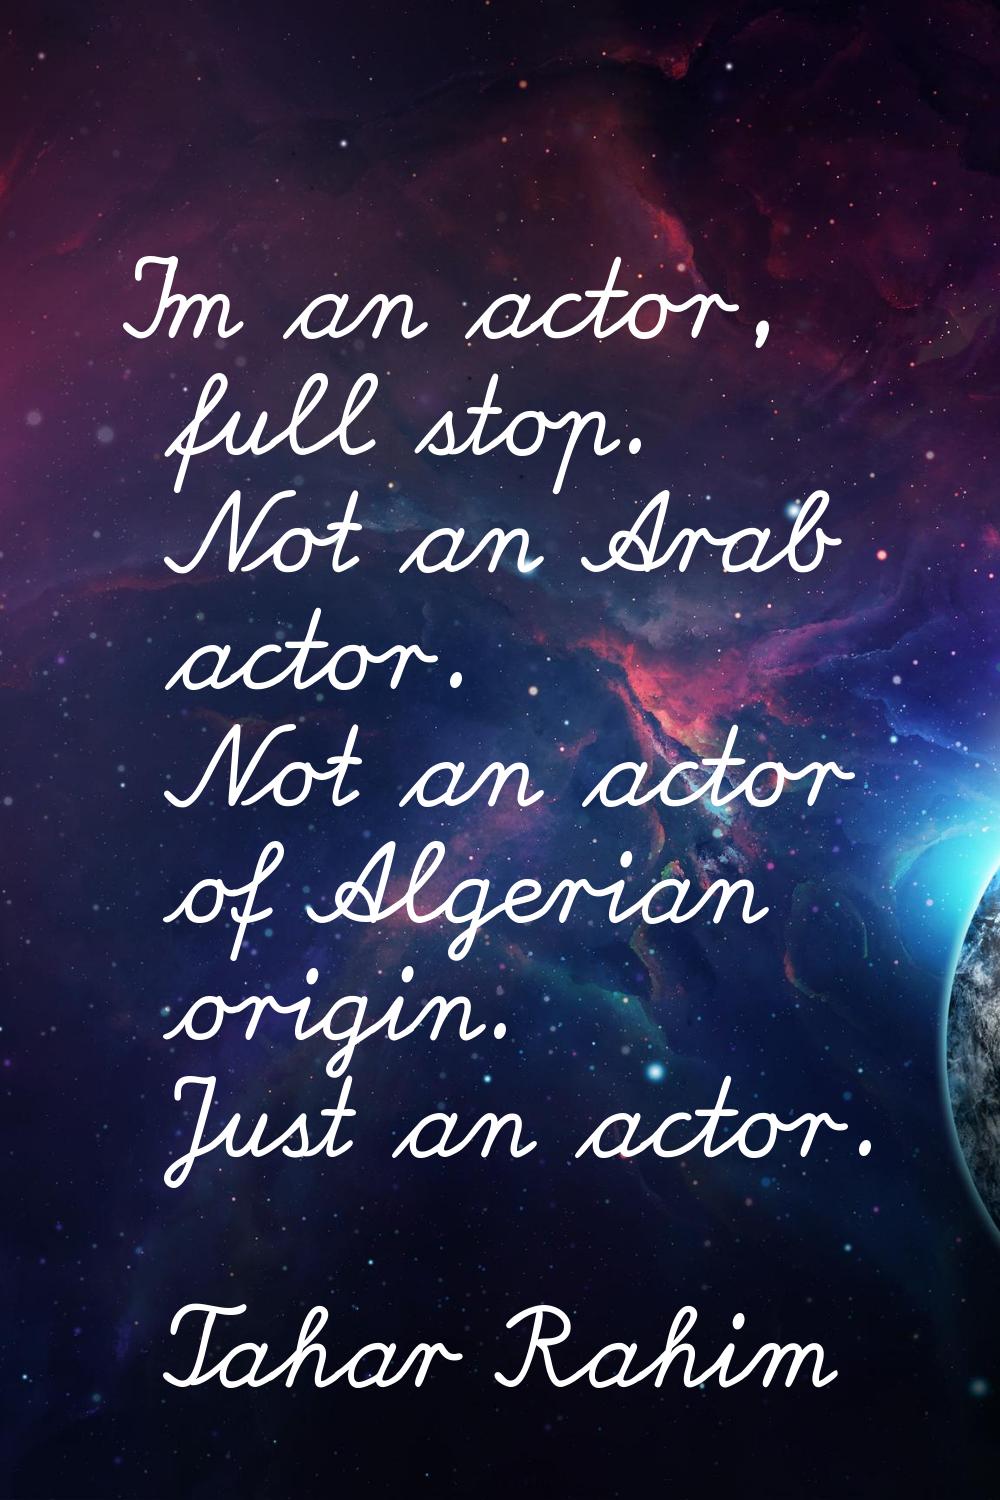 I'm an actor, full stop. Not an Arab actor. Not an actor of Algerian origin. Just an actor.